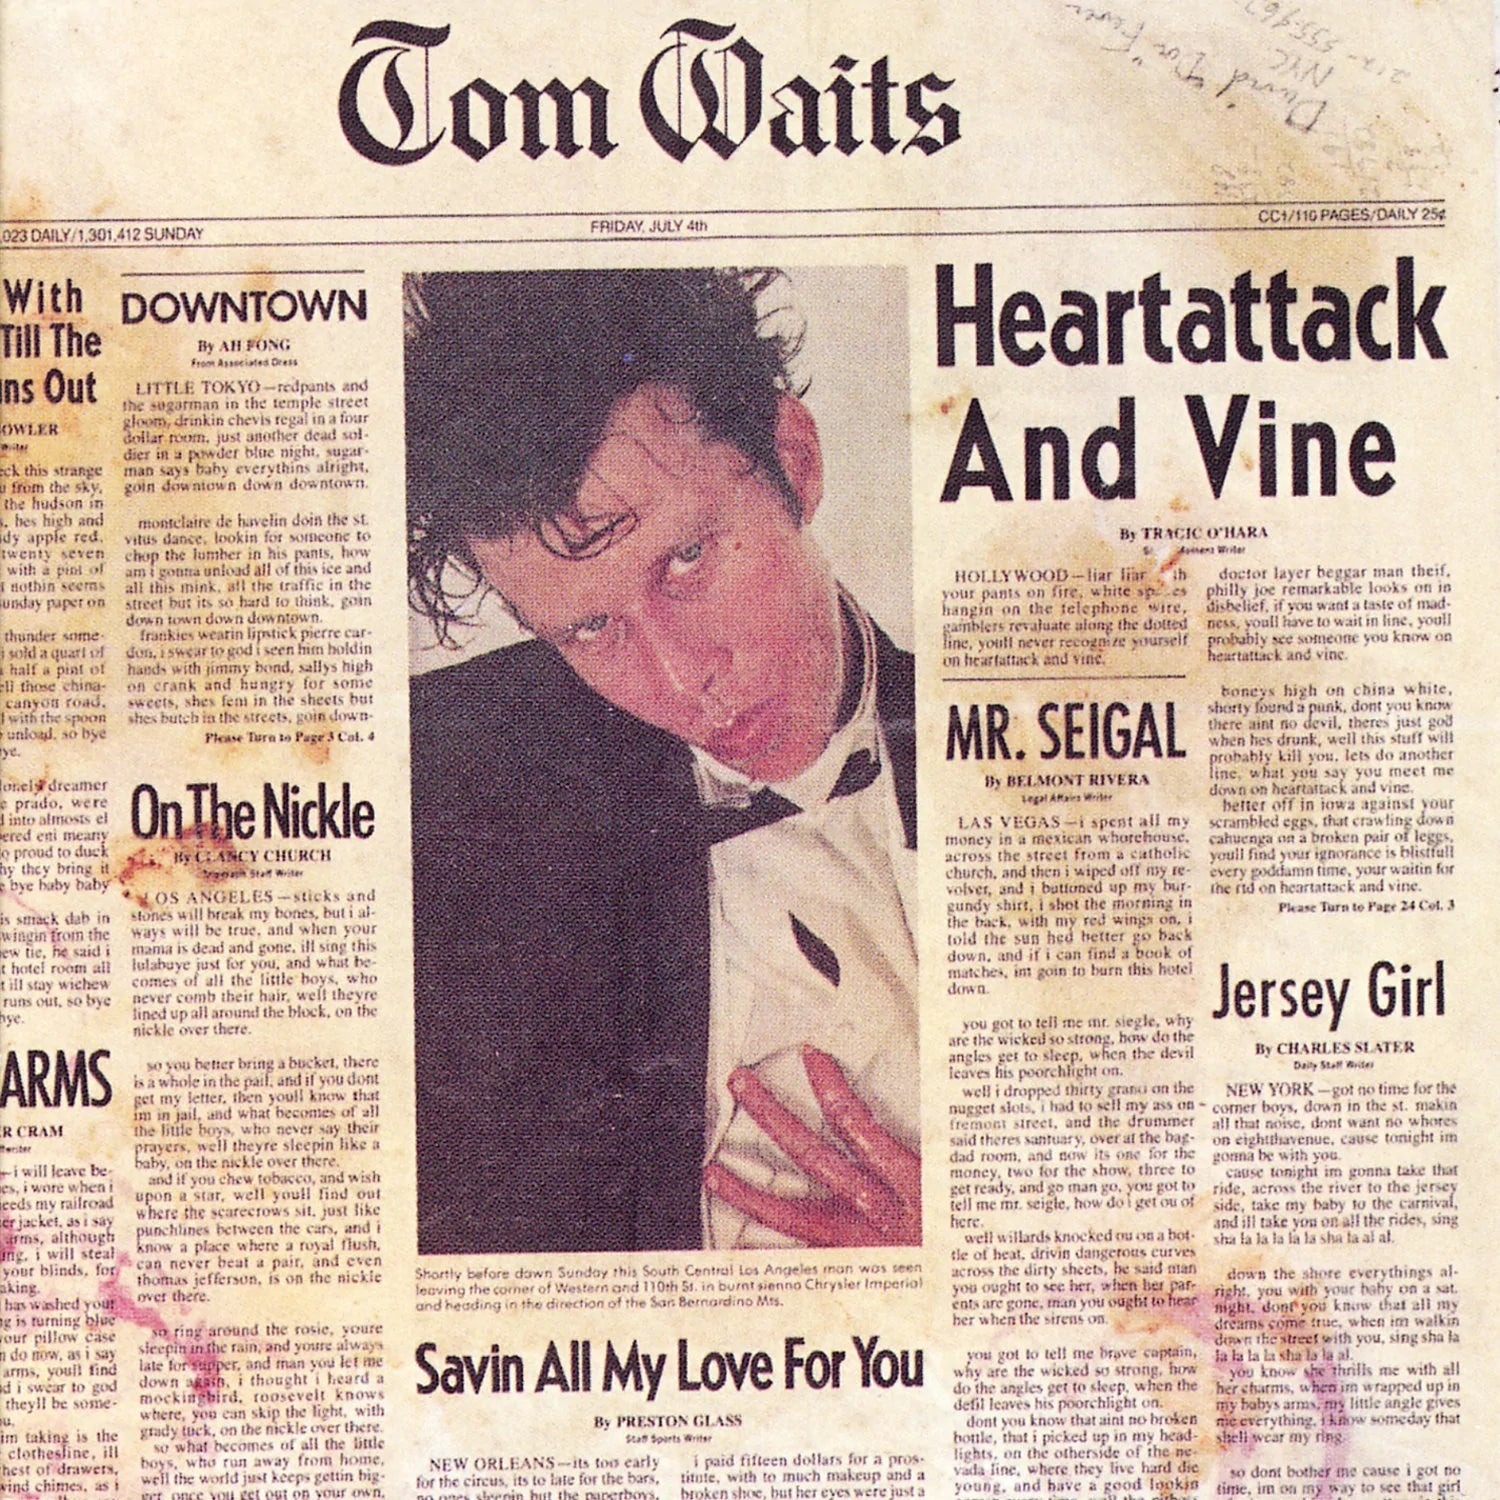 TOM WAITS - HEARTATTACK AND VINE Vinyl LP